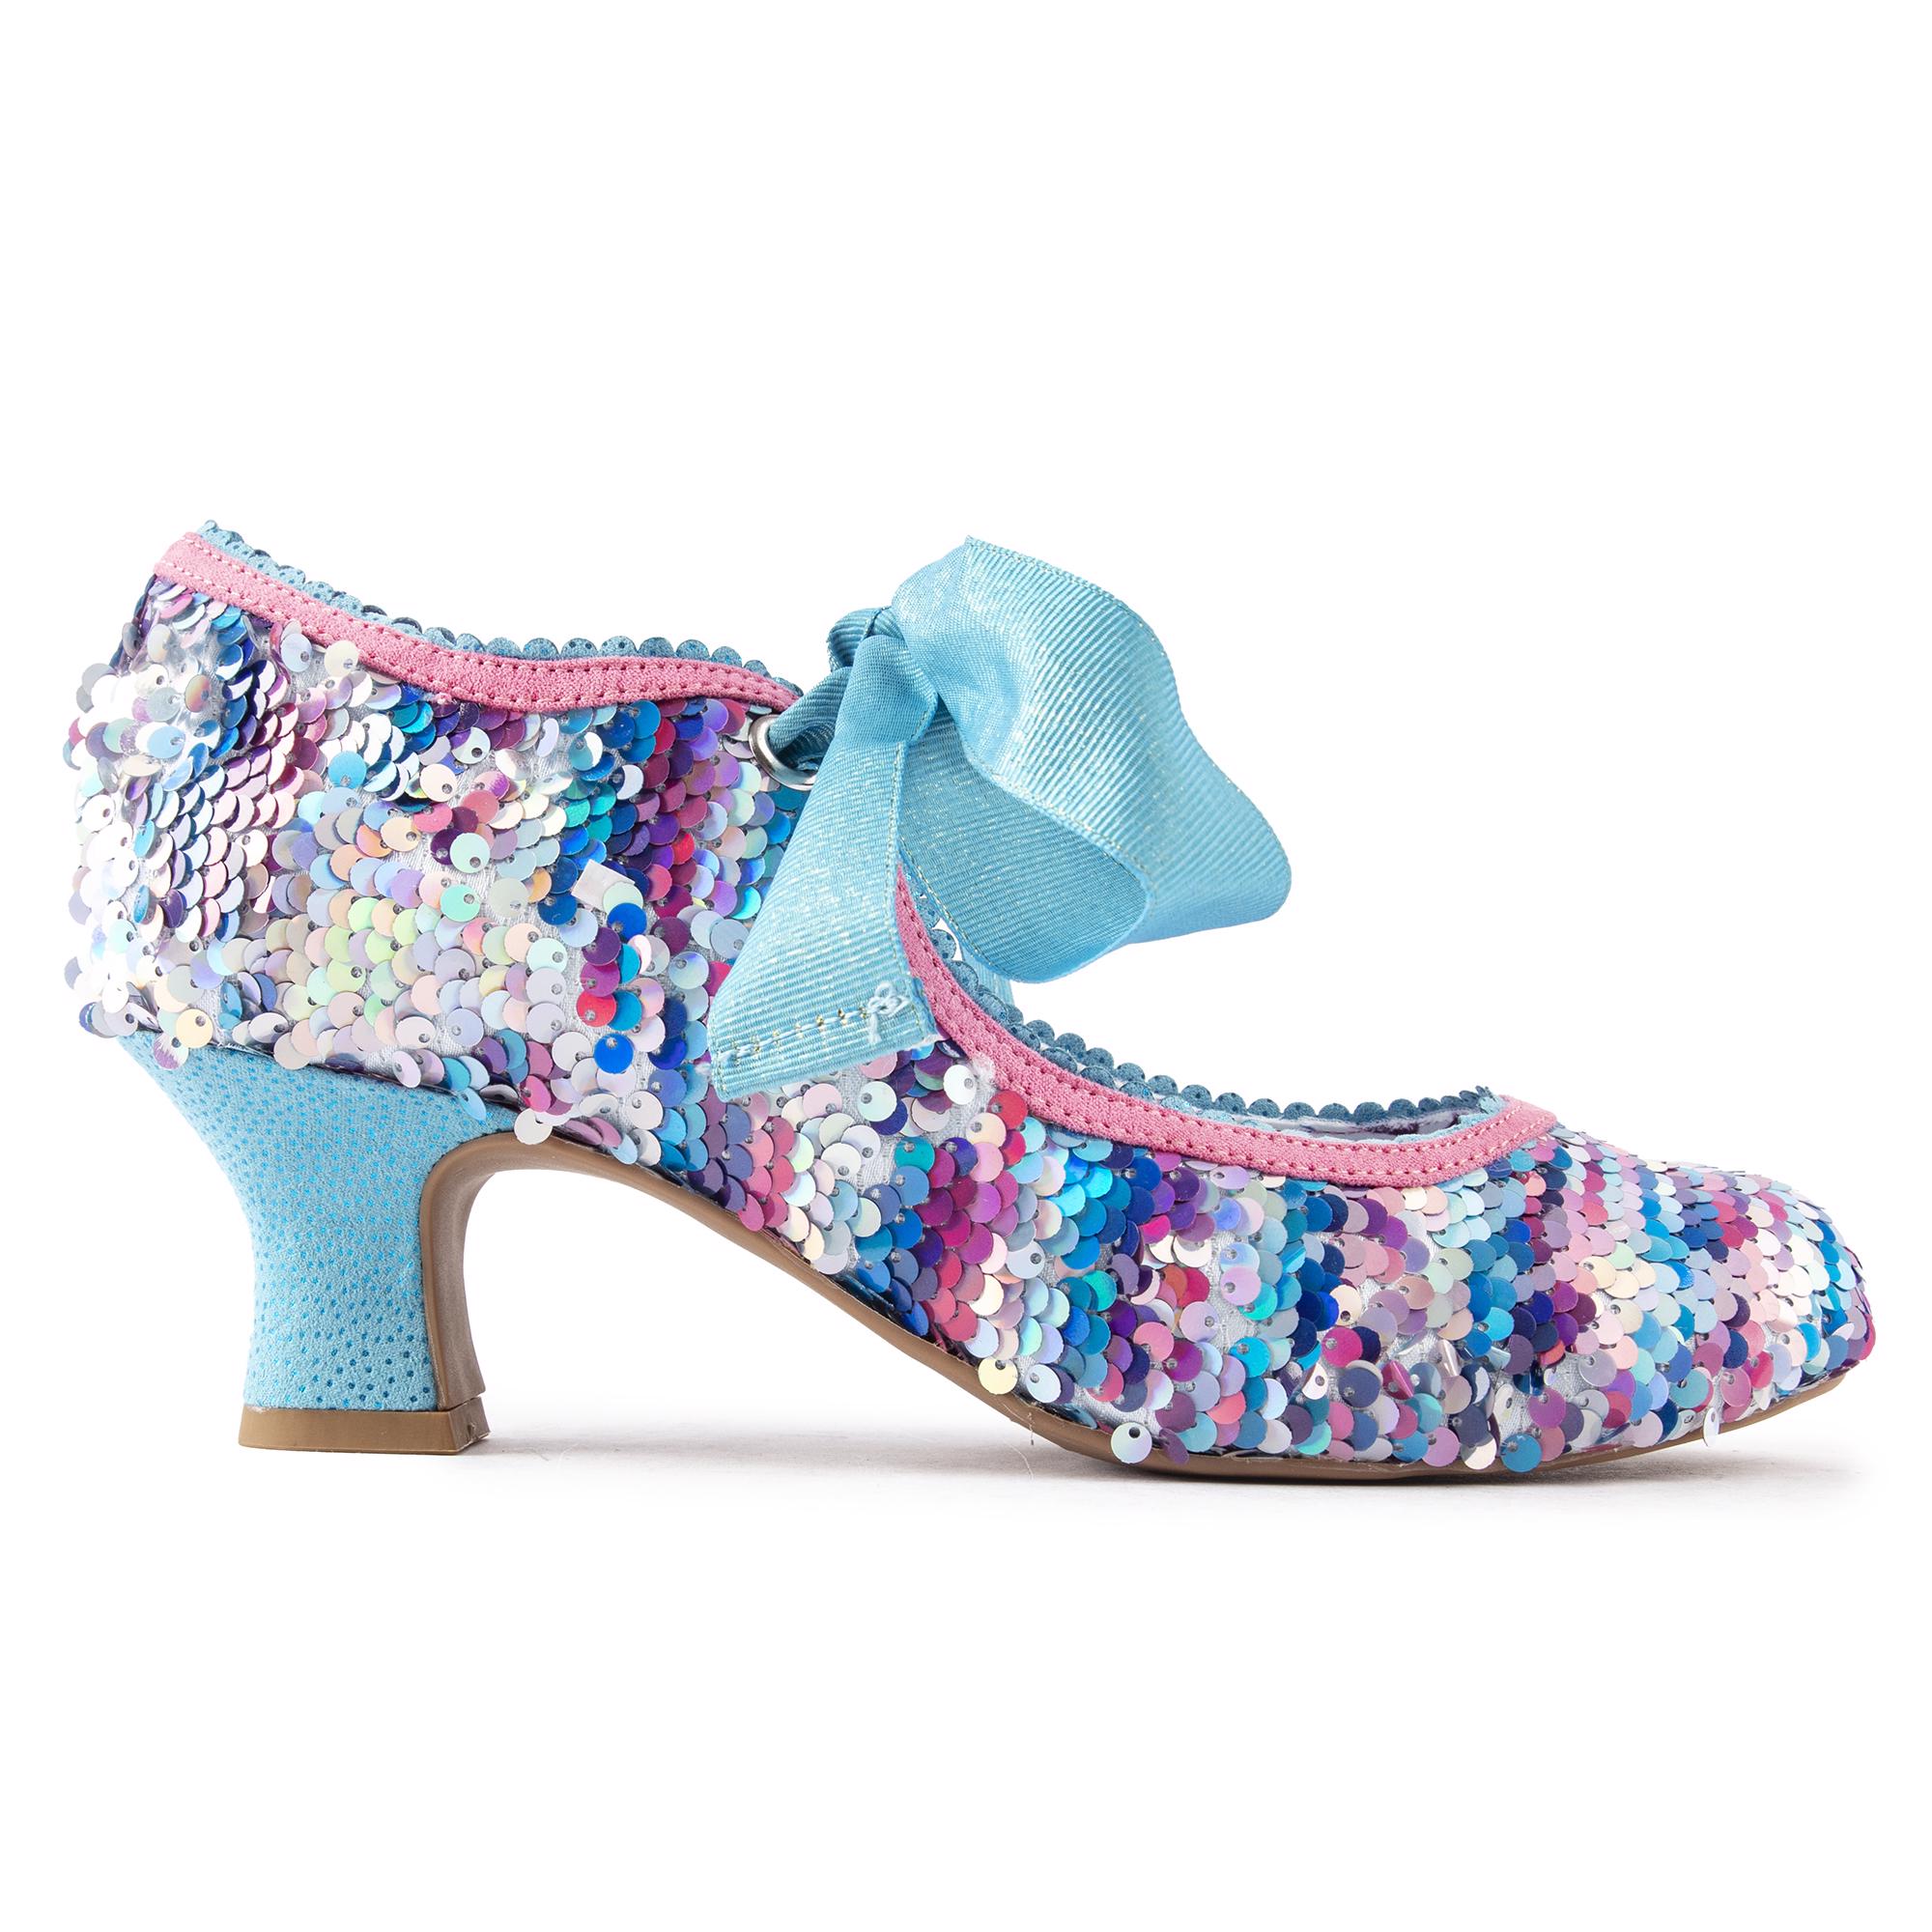 RUBY SHOO Womens Peyton Heels Shoes Blue